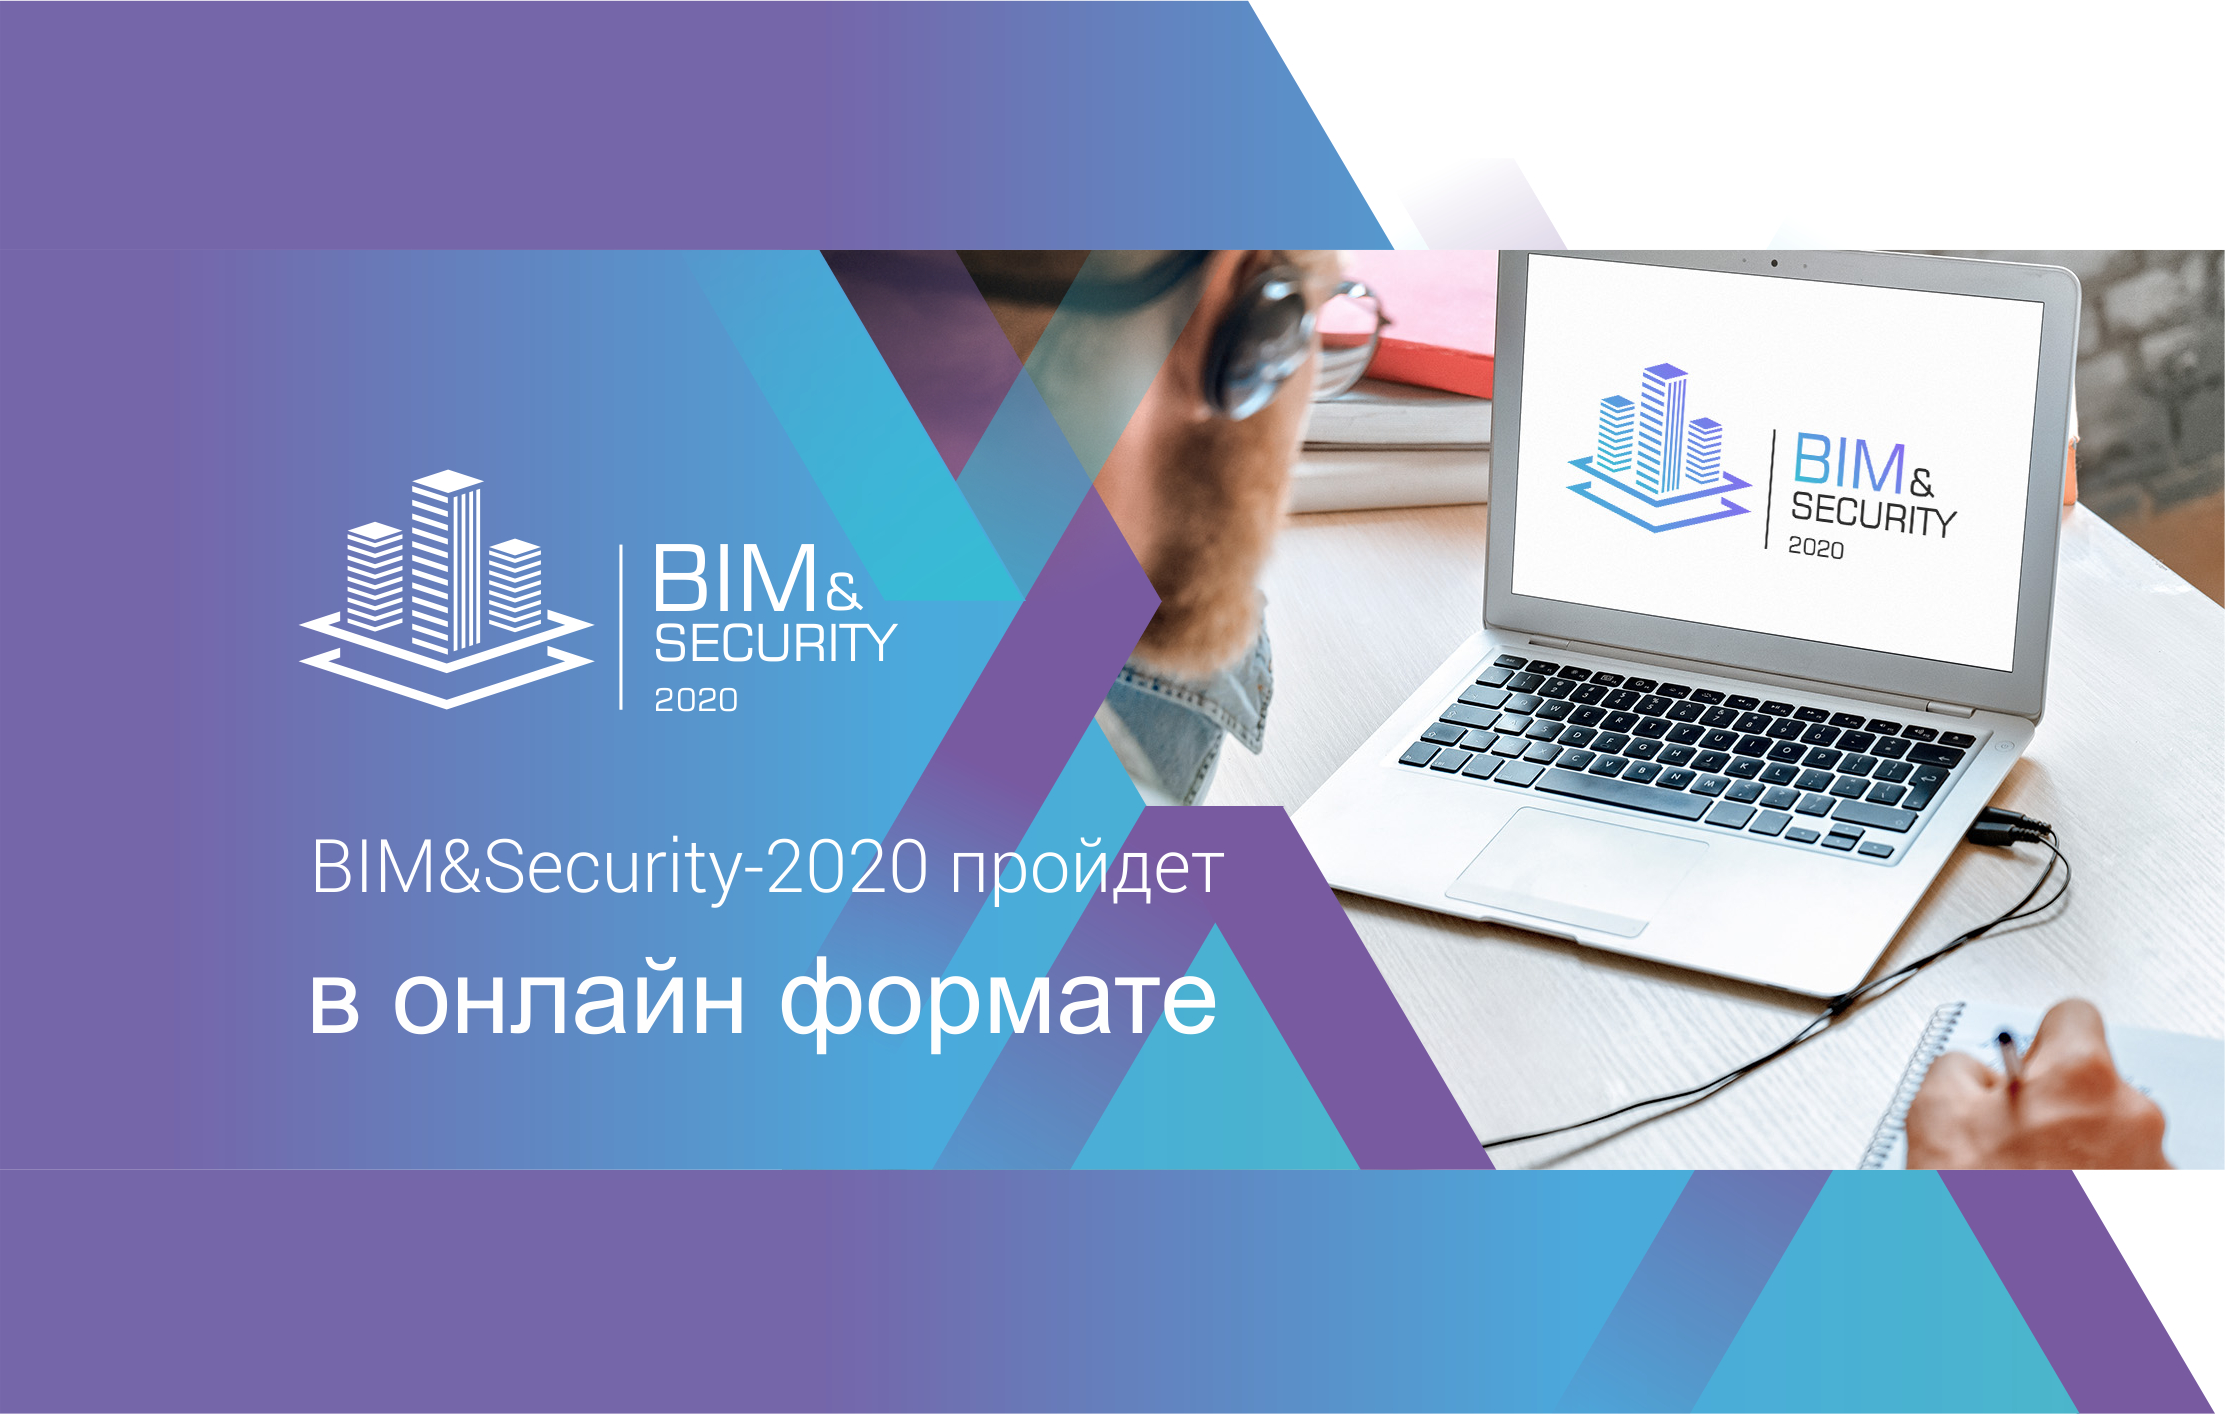 BIM&Security 2022. Ценные бумаги 2020